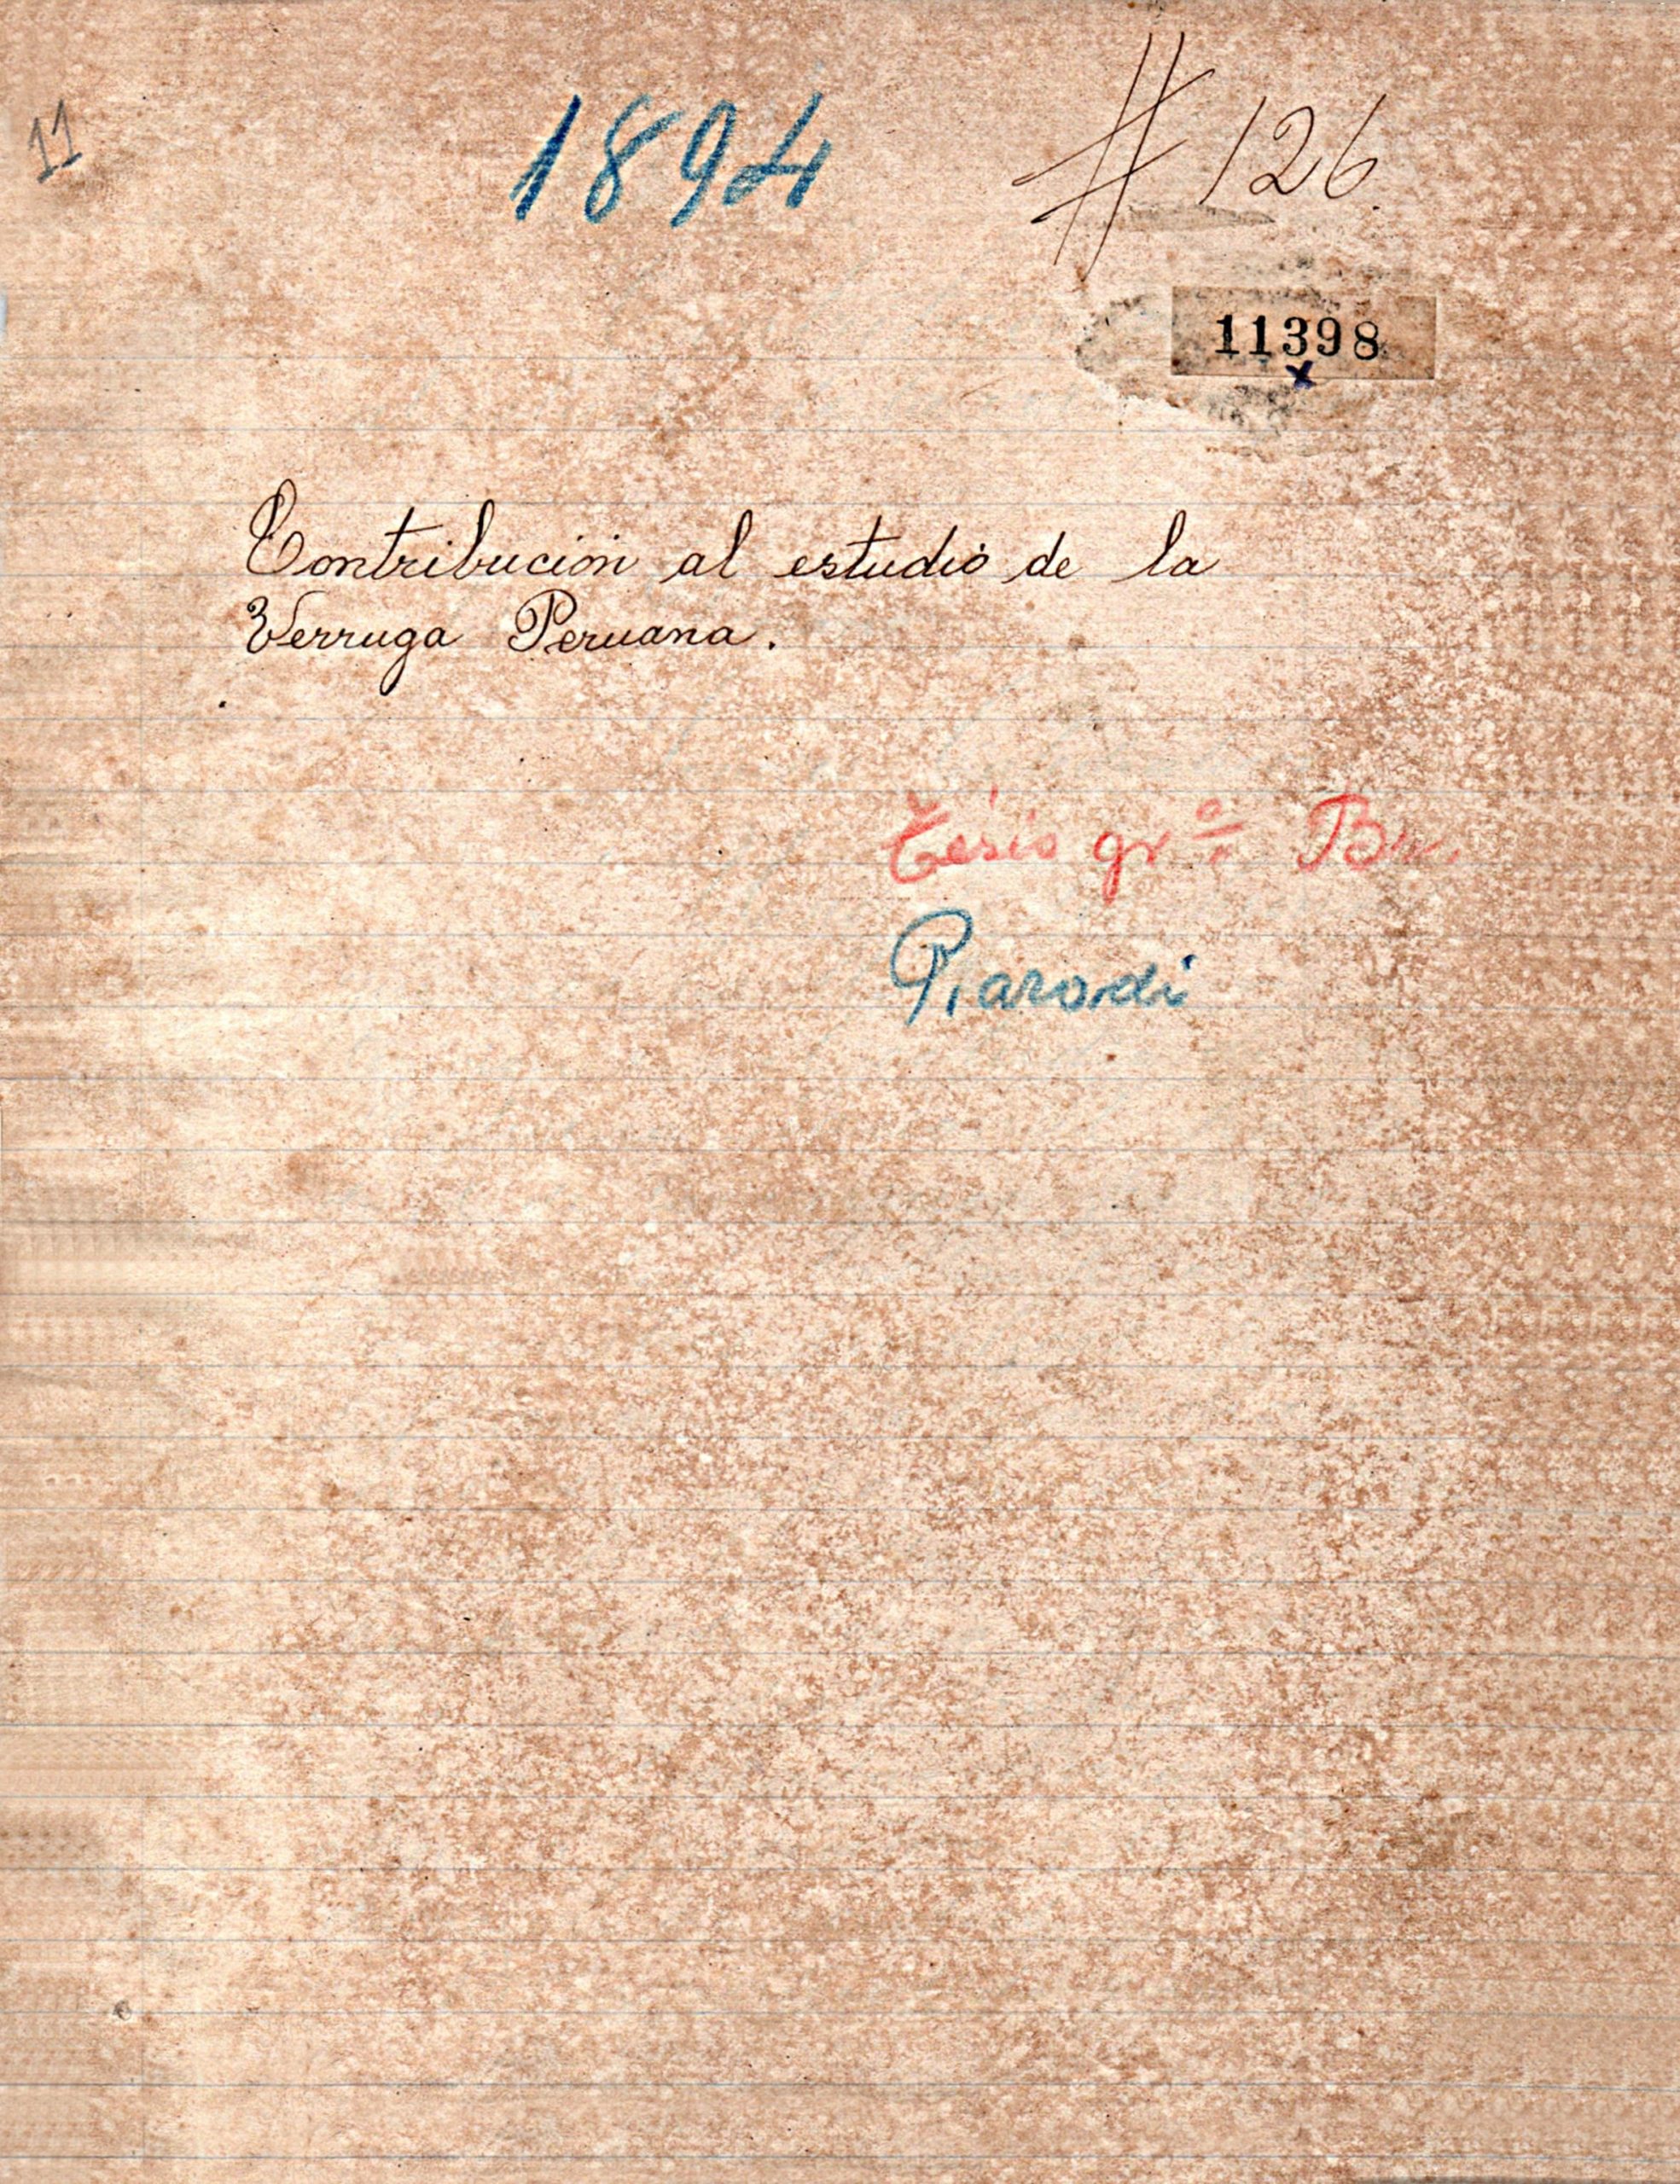 Contribucion al estudio de la verruga peruana_Santiago Parodi _1894